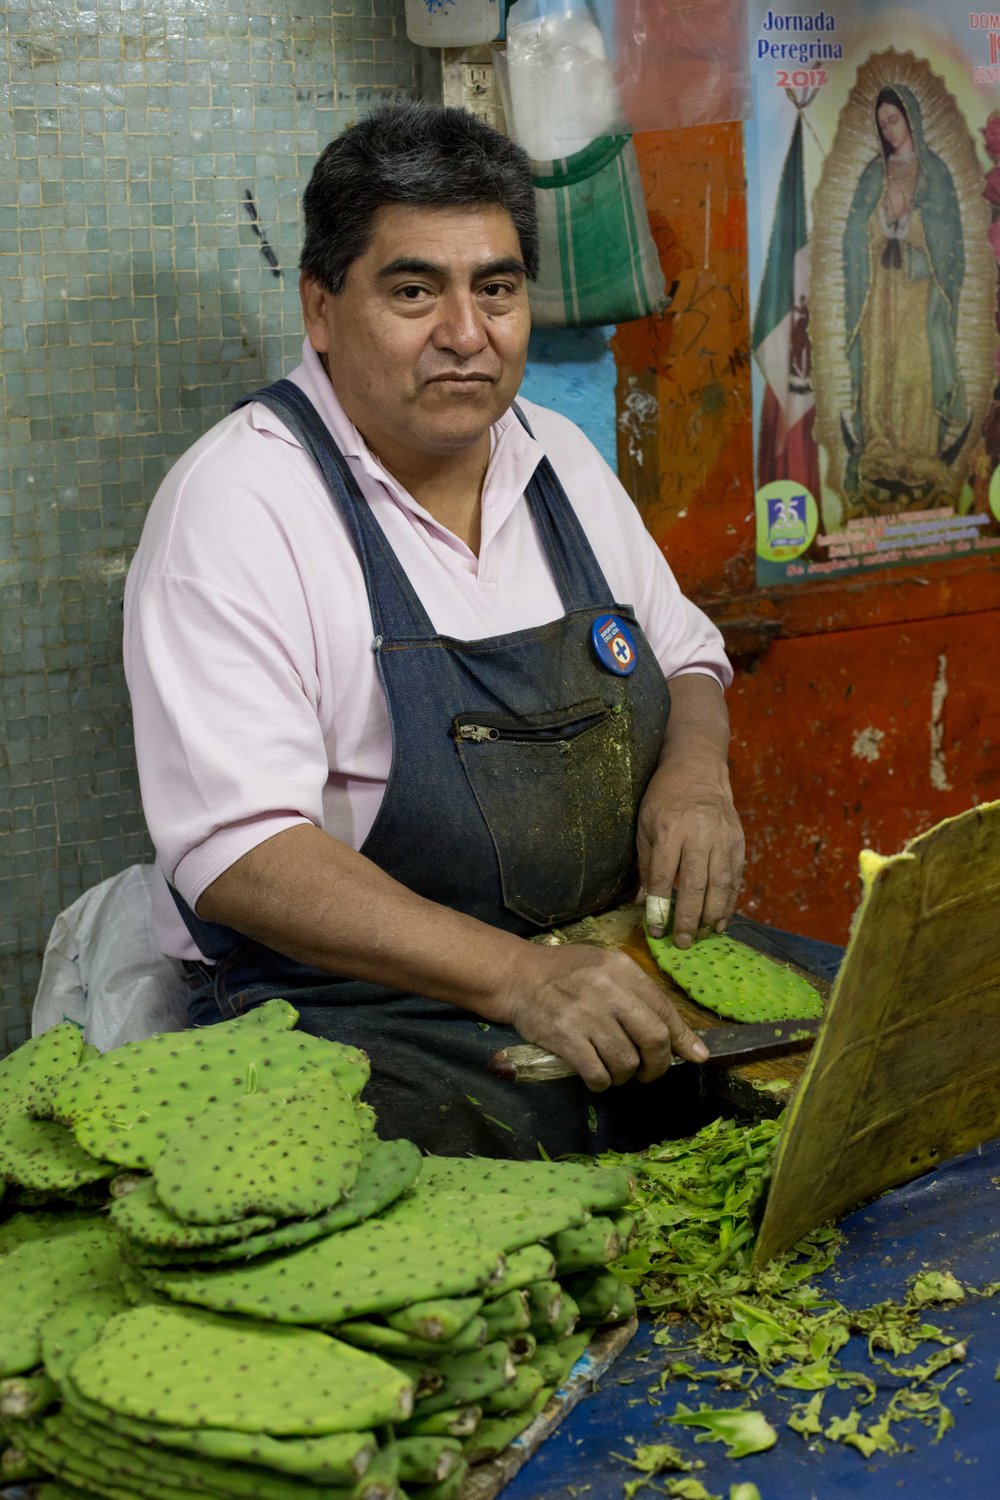 Market, Mexico City